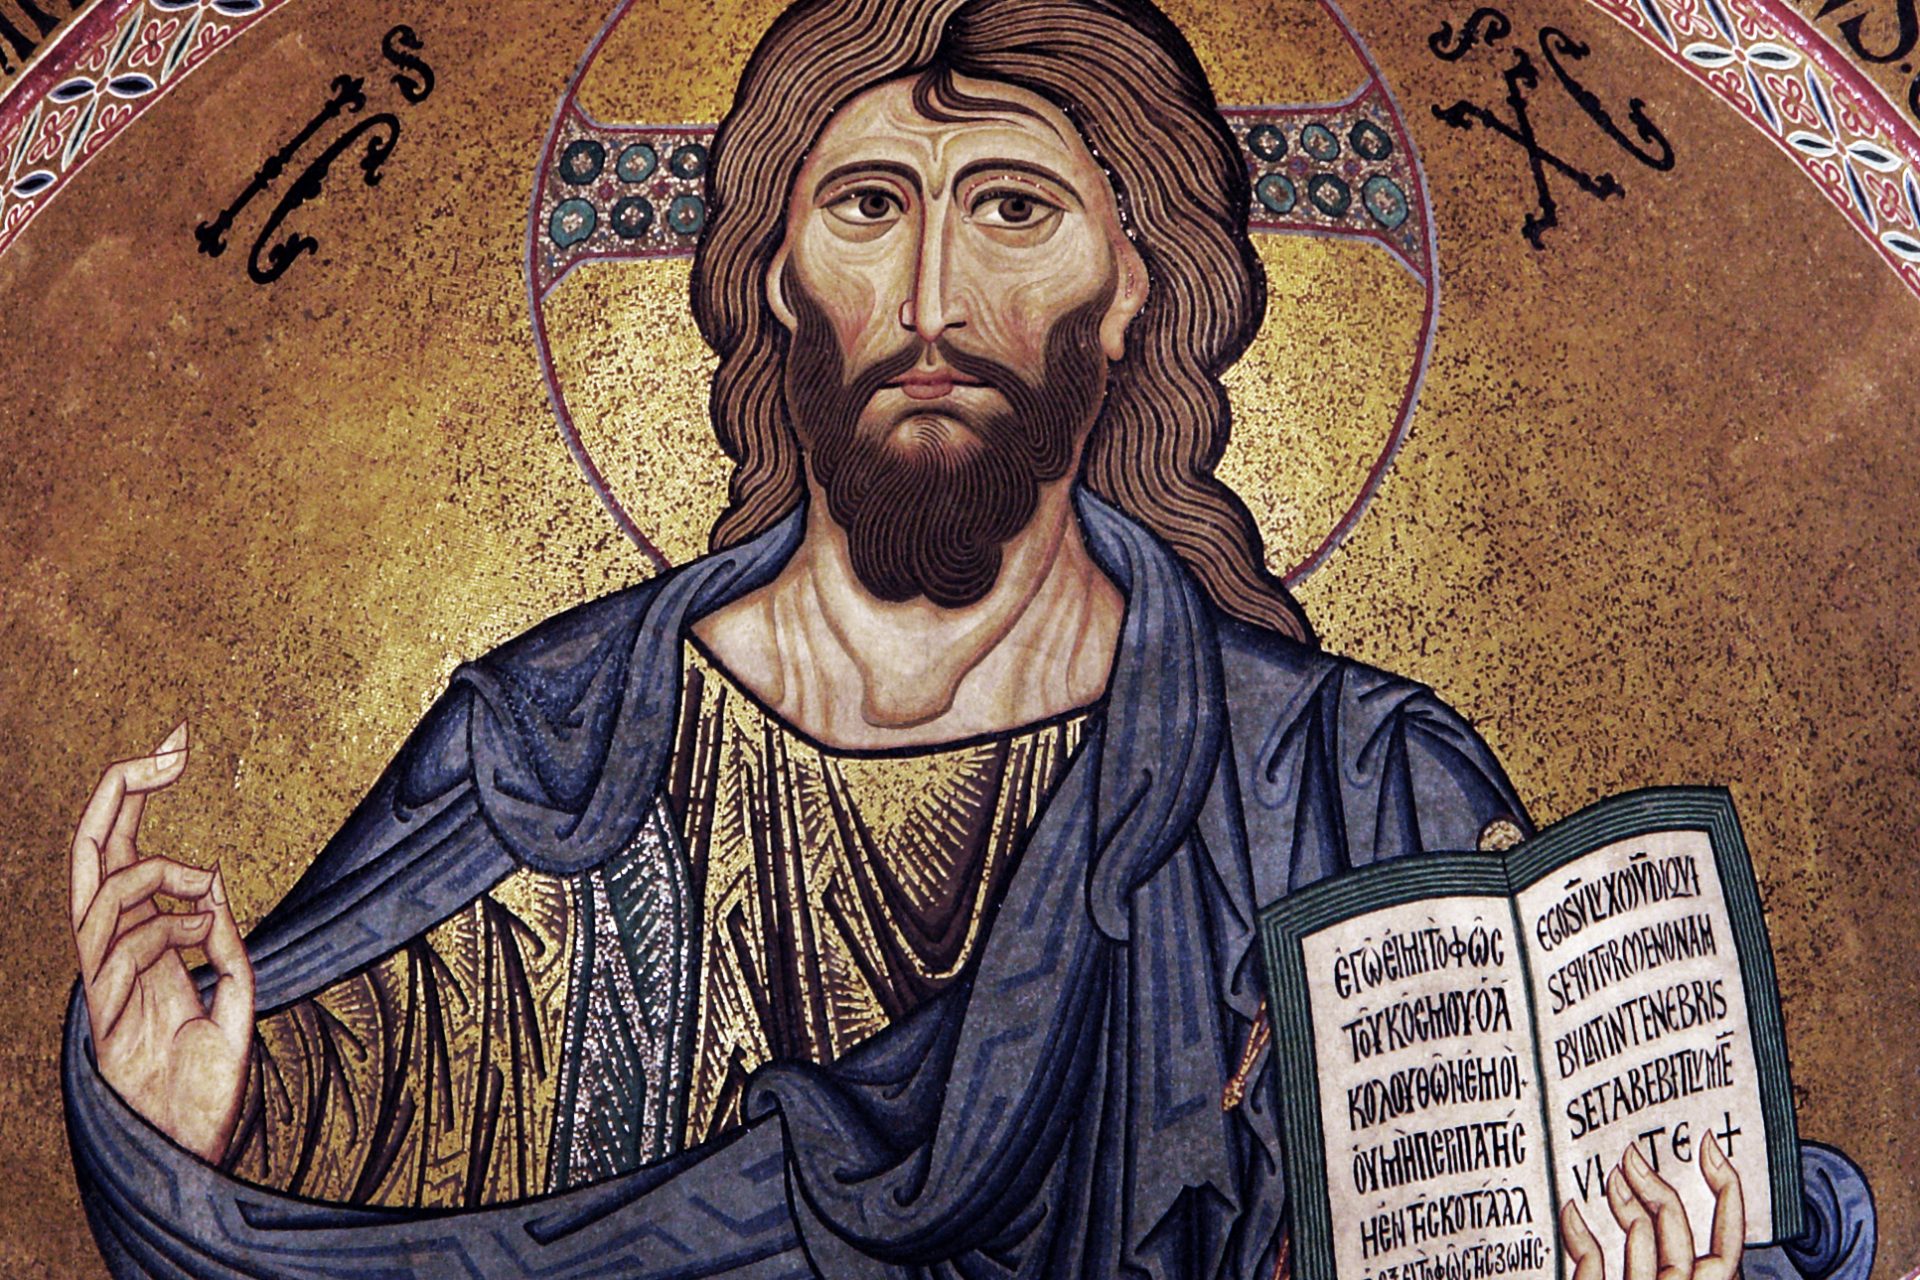 The original Christian gospels 